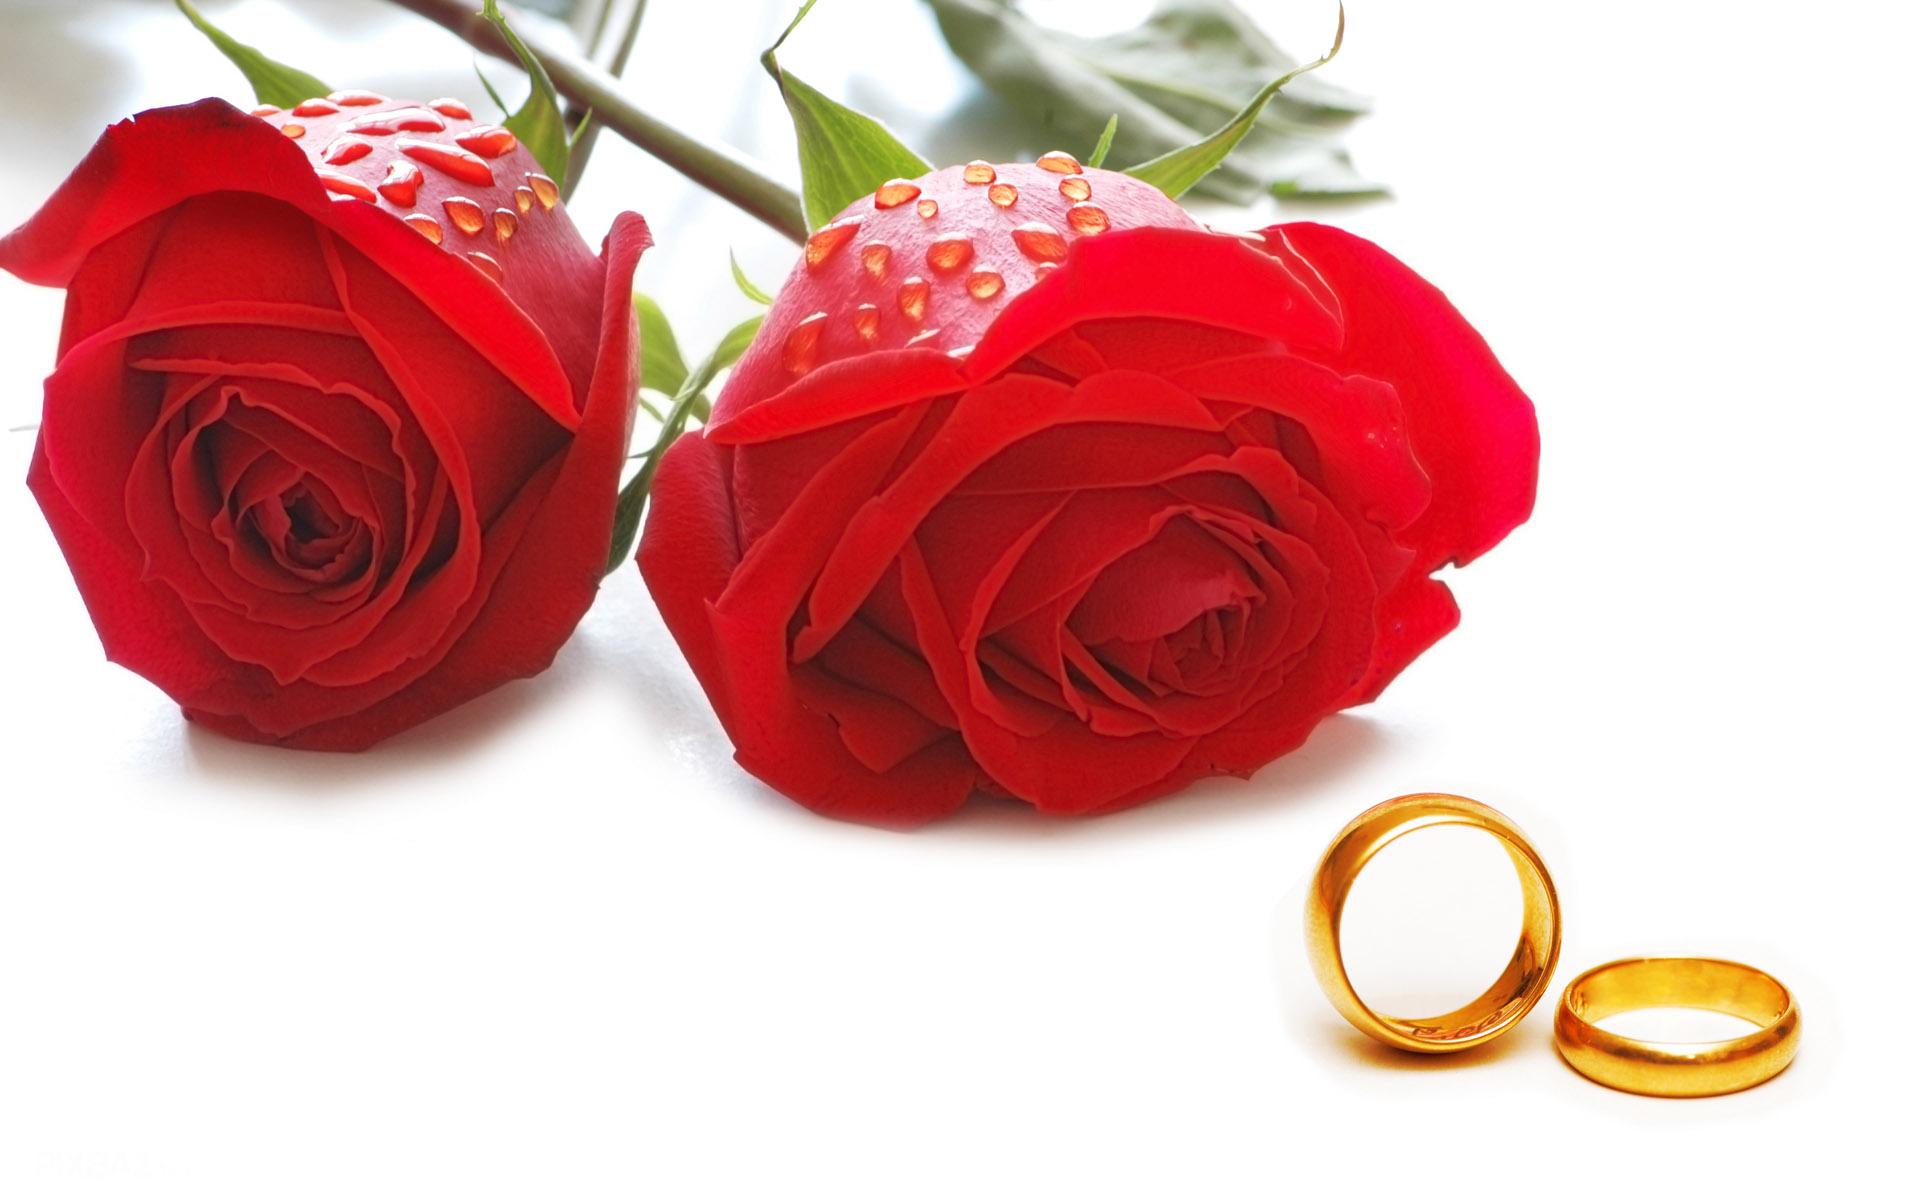 ۱۳۰ میلیارد تومان تسهیلات ازدواج در سال جدید به زوج های جوان پرداخت خواهد شد 